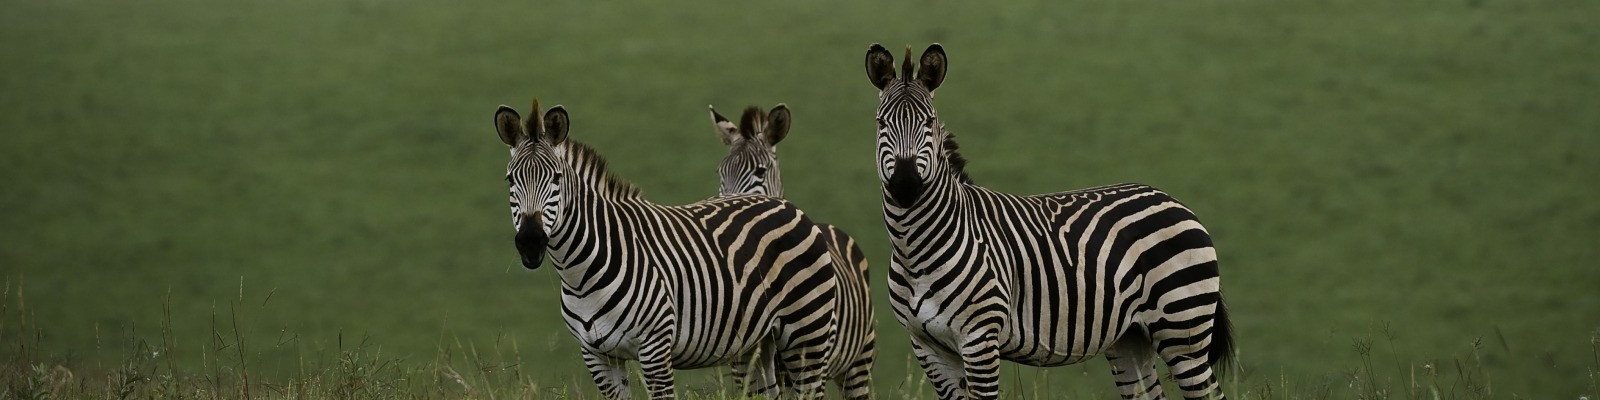 Malawi - Nyika - Zebras